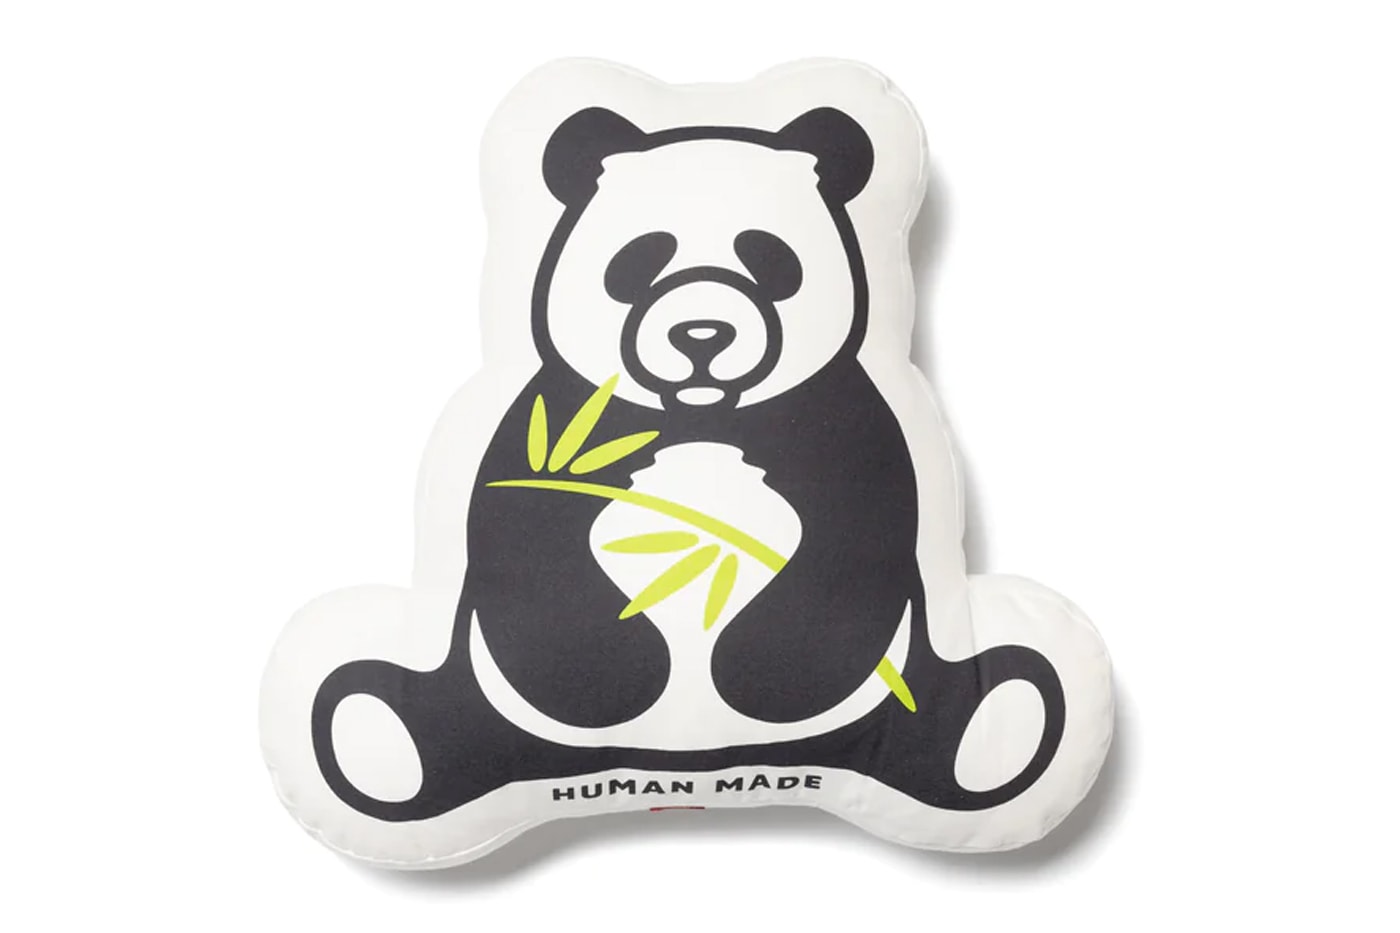 Human Made china launch beijing shanghai shenzhen xi an panda dragon t shirt pillow release info date march 18 2023